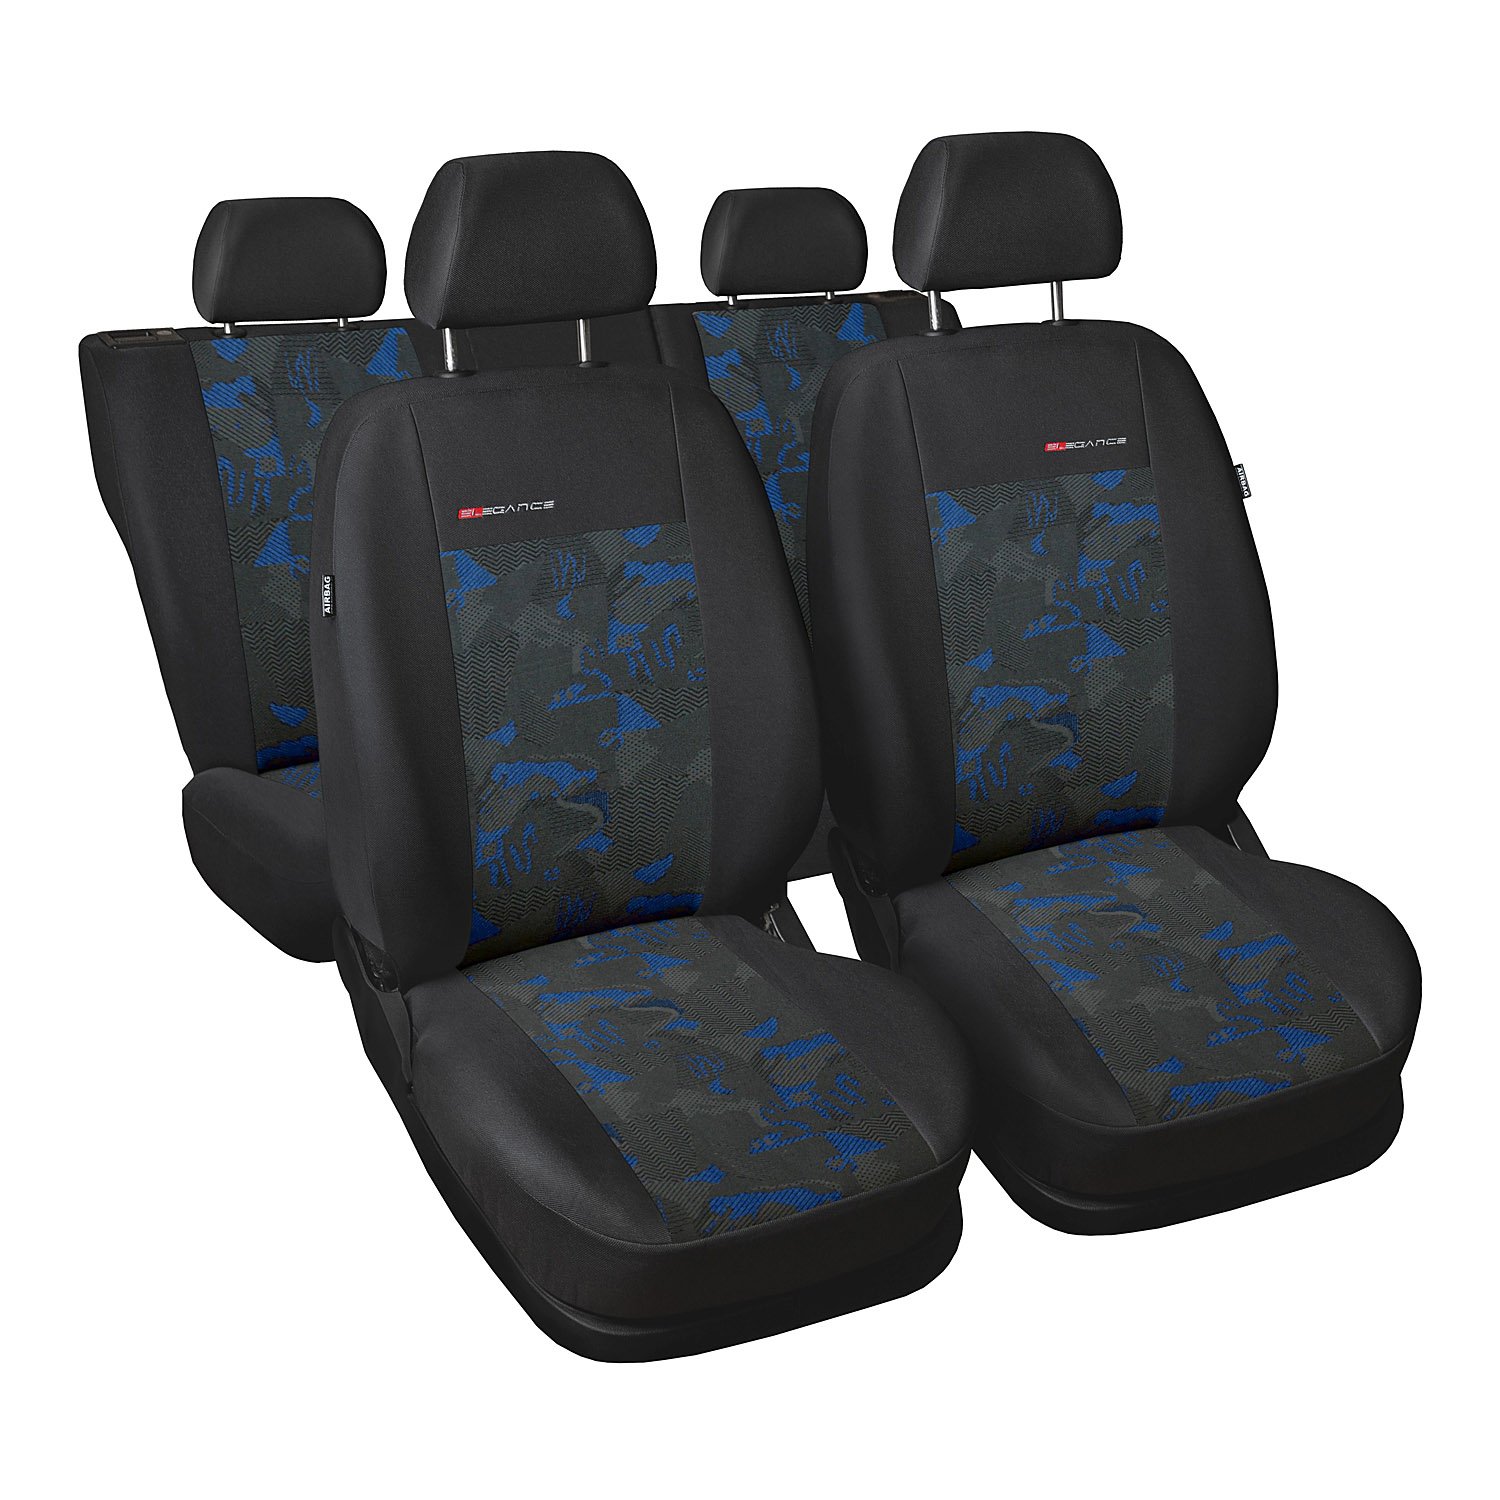 GSC Sitzbezüge Autositzbezug Komplettset 5-Sitze, Universal Blau,Elegance, kompatibel mit Nissan X-Trail 5-Sitze von Auto-Dekor